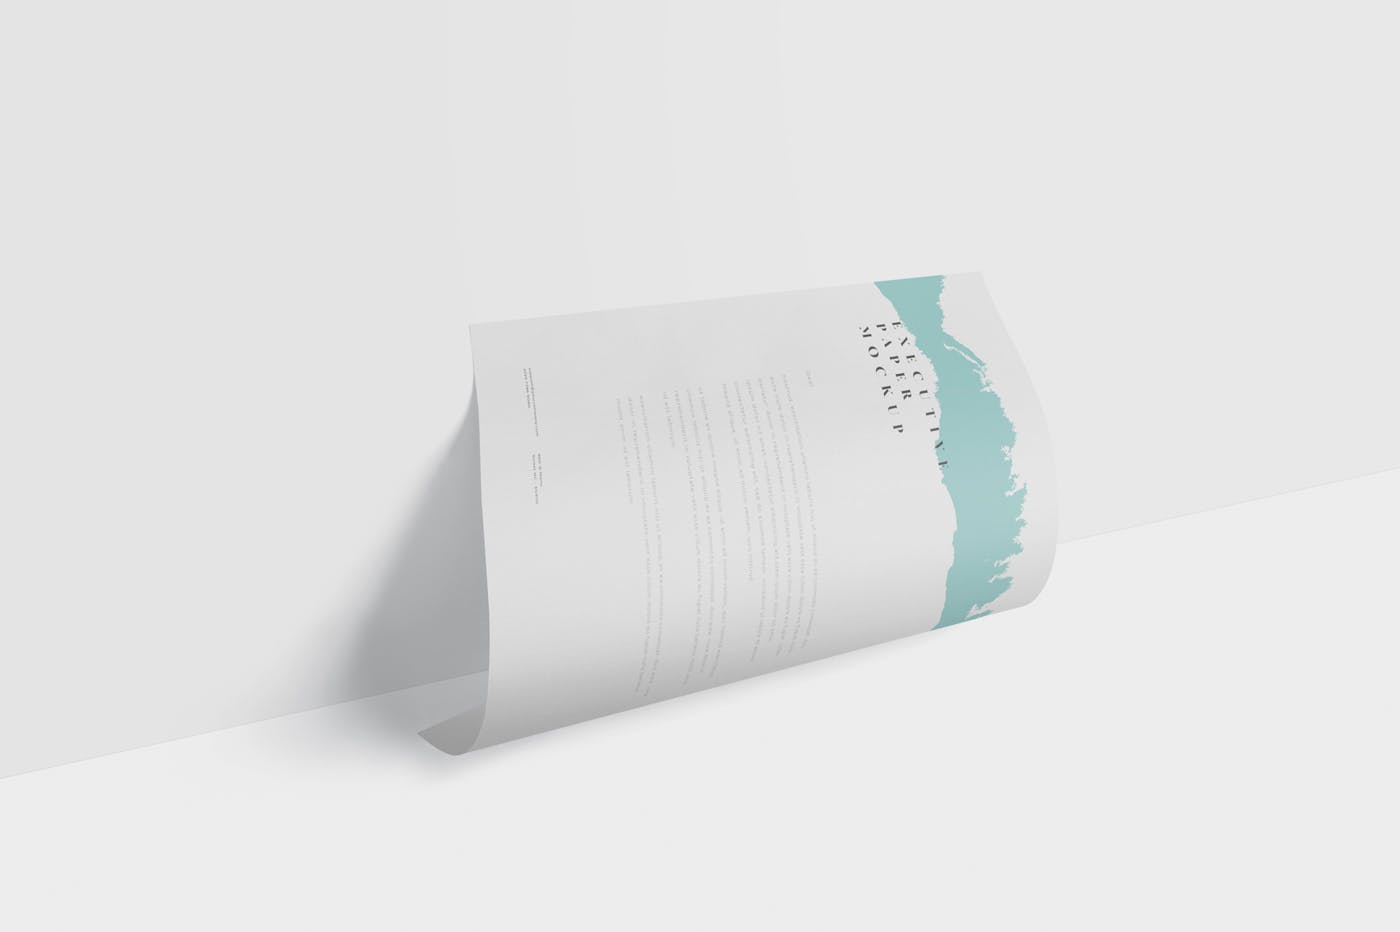 企业宣传单张设计效果图样机素材库精选 Executive Paper Mockup – 7×10 Inch Size插图(4)